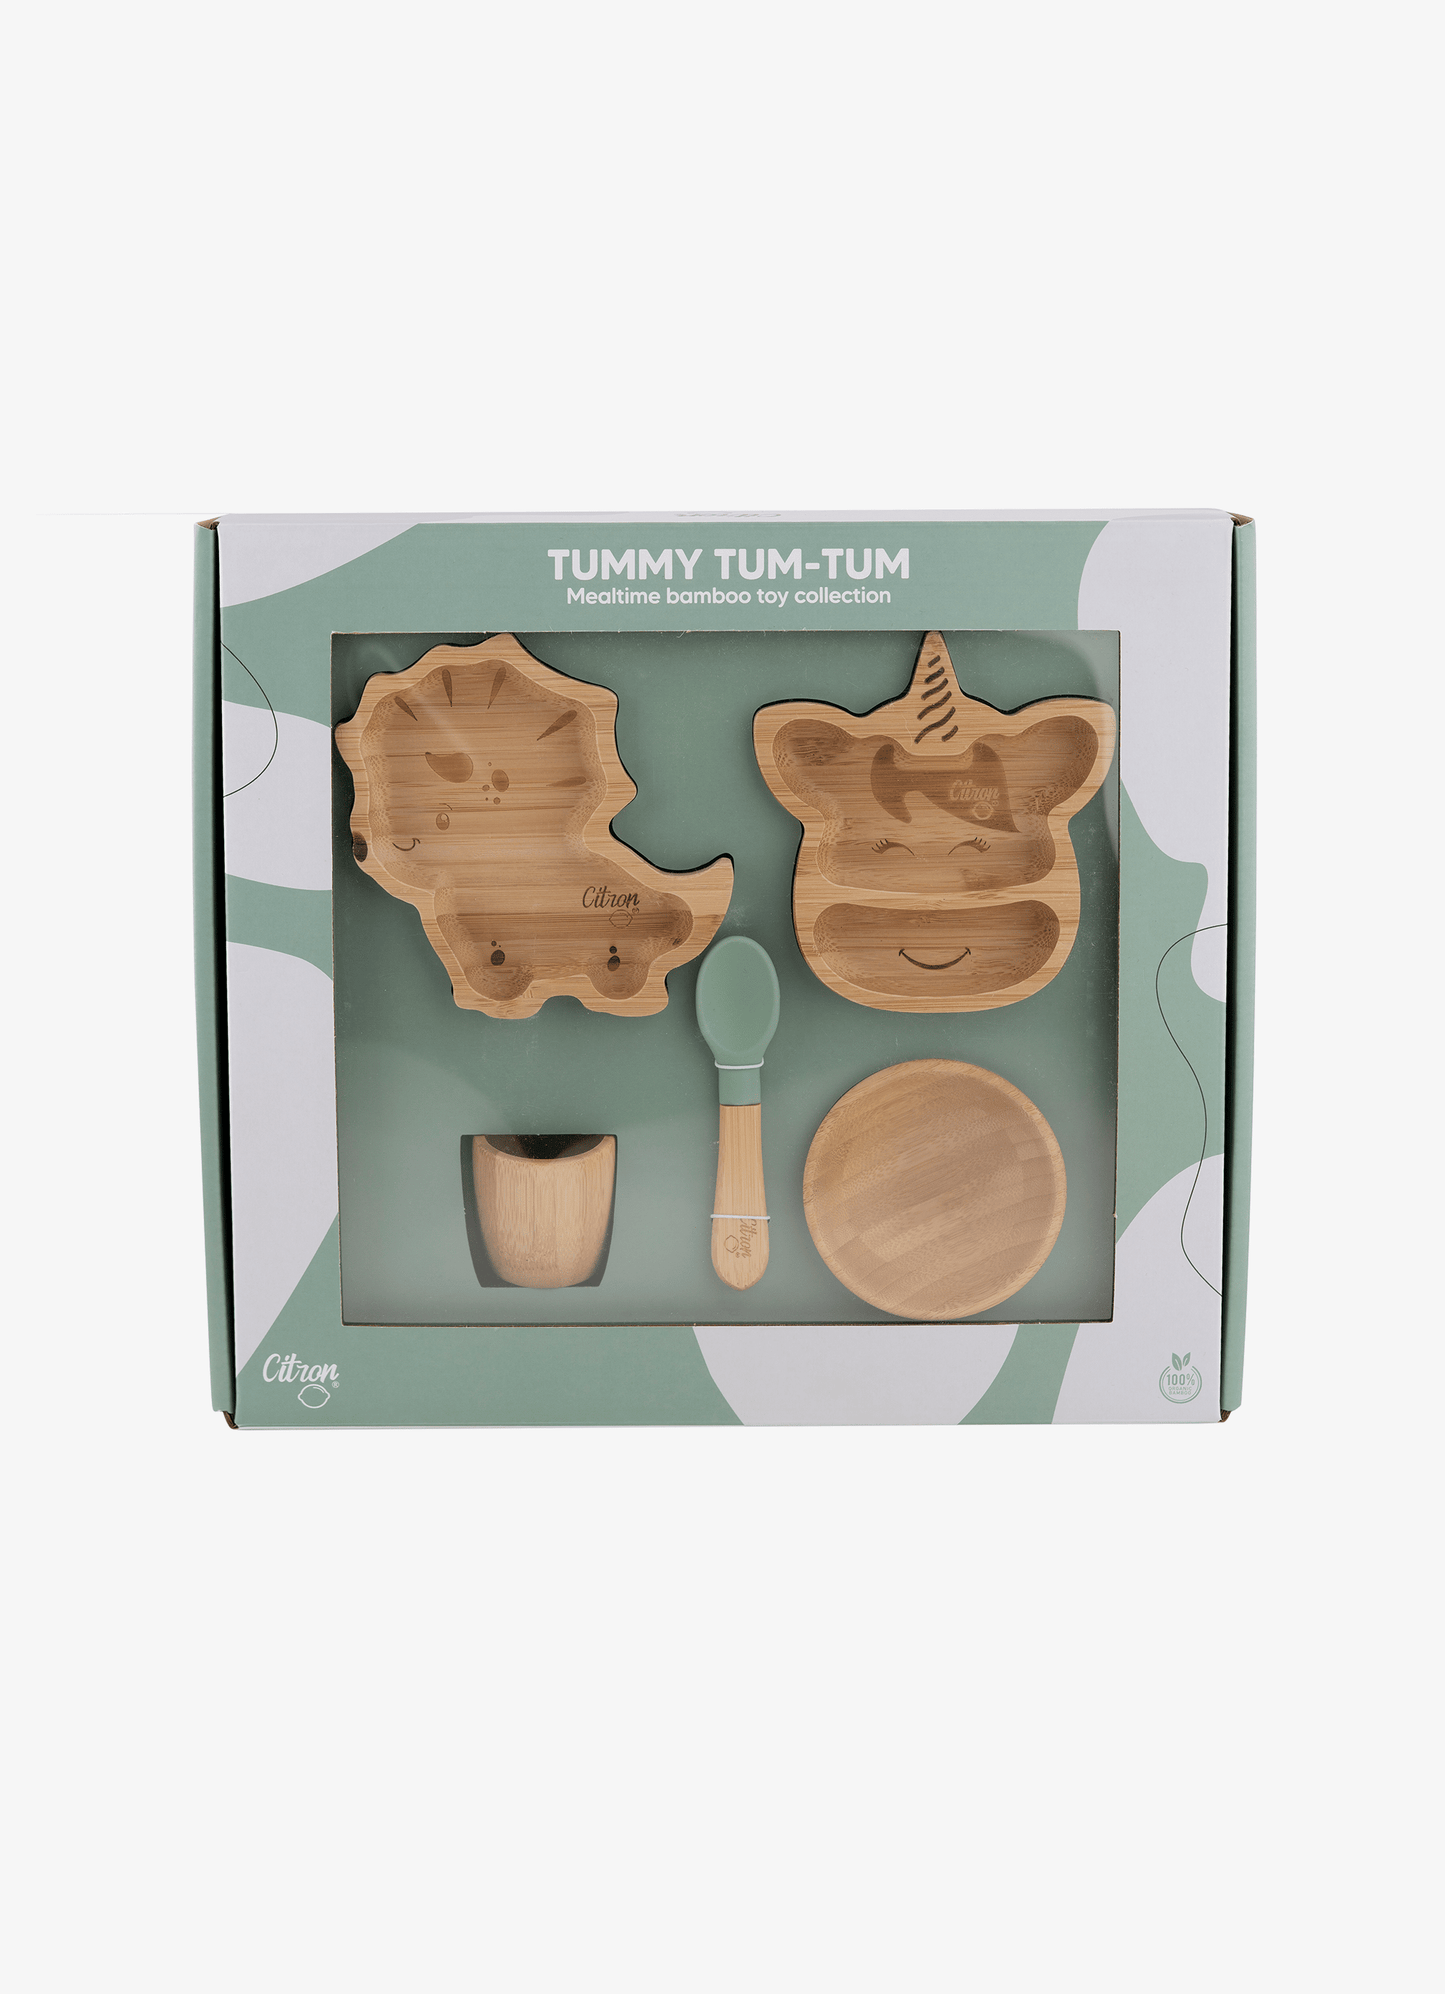 مجموعة ألعاب Tummy Tum-Tum Bamboo - أطباق / وعاء / كوب